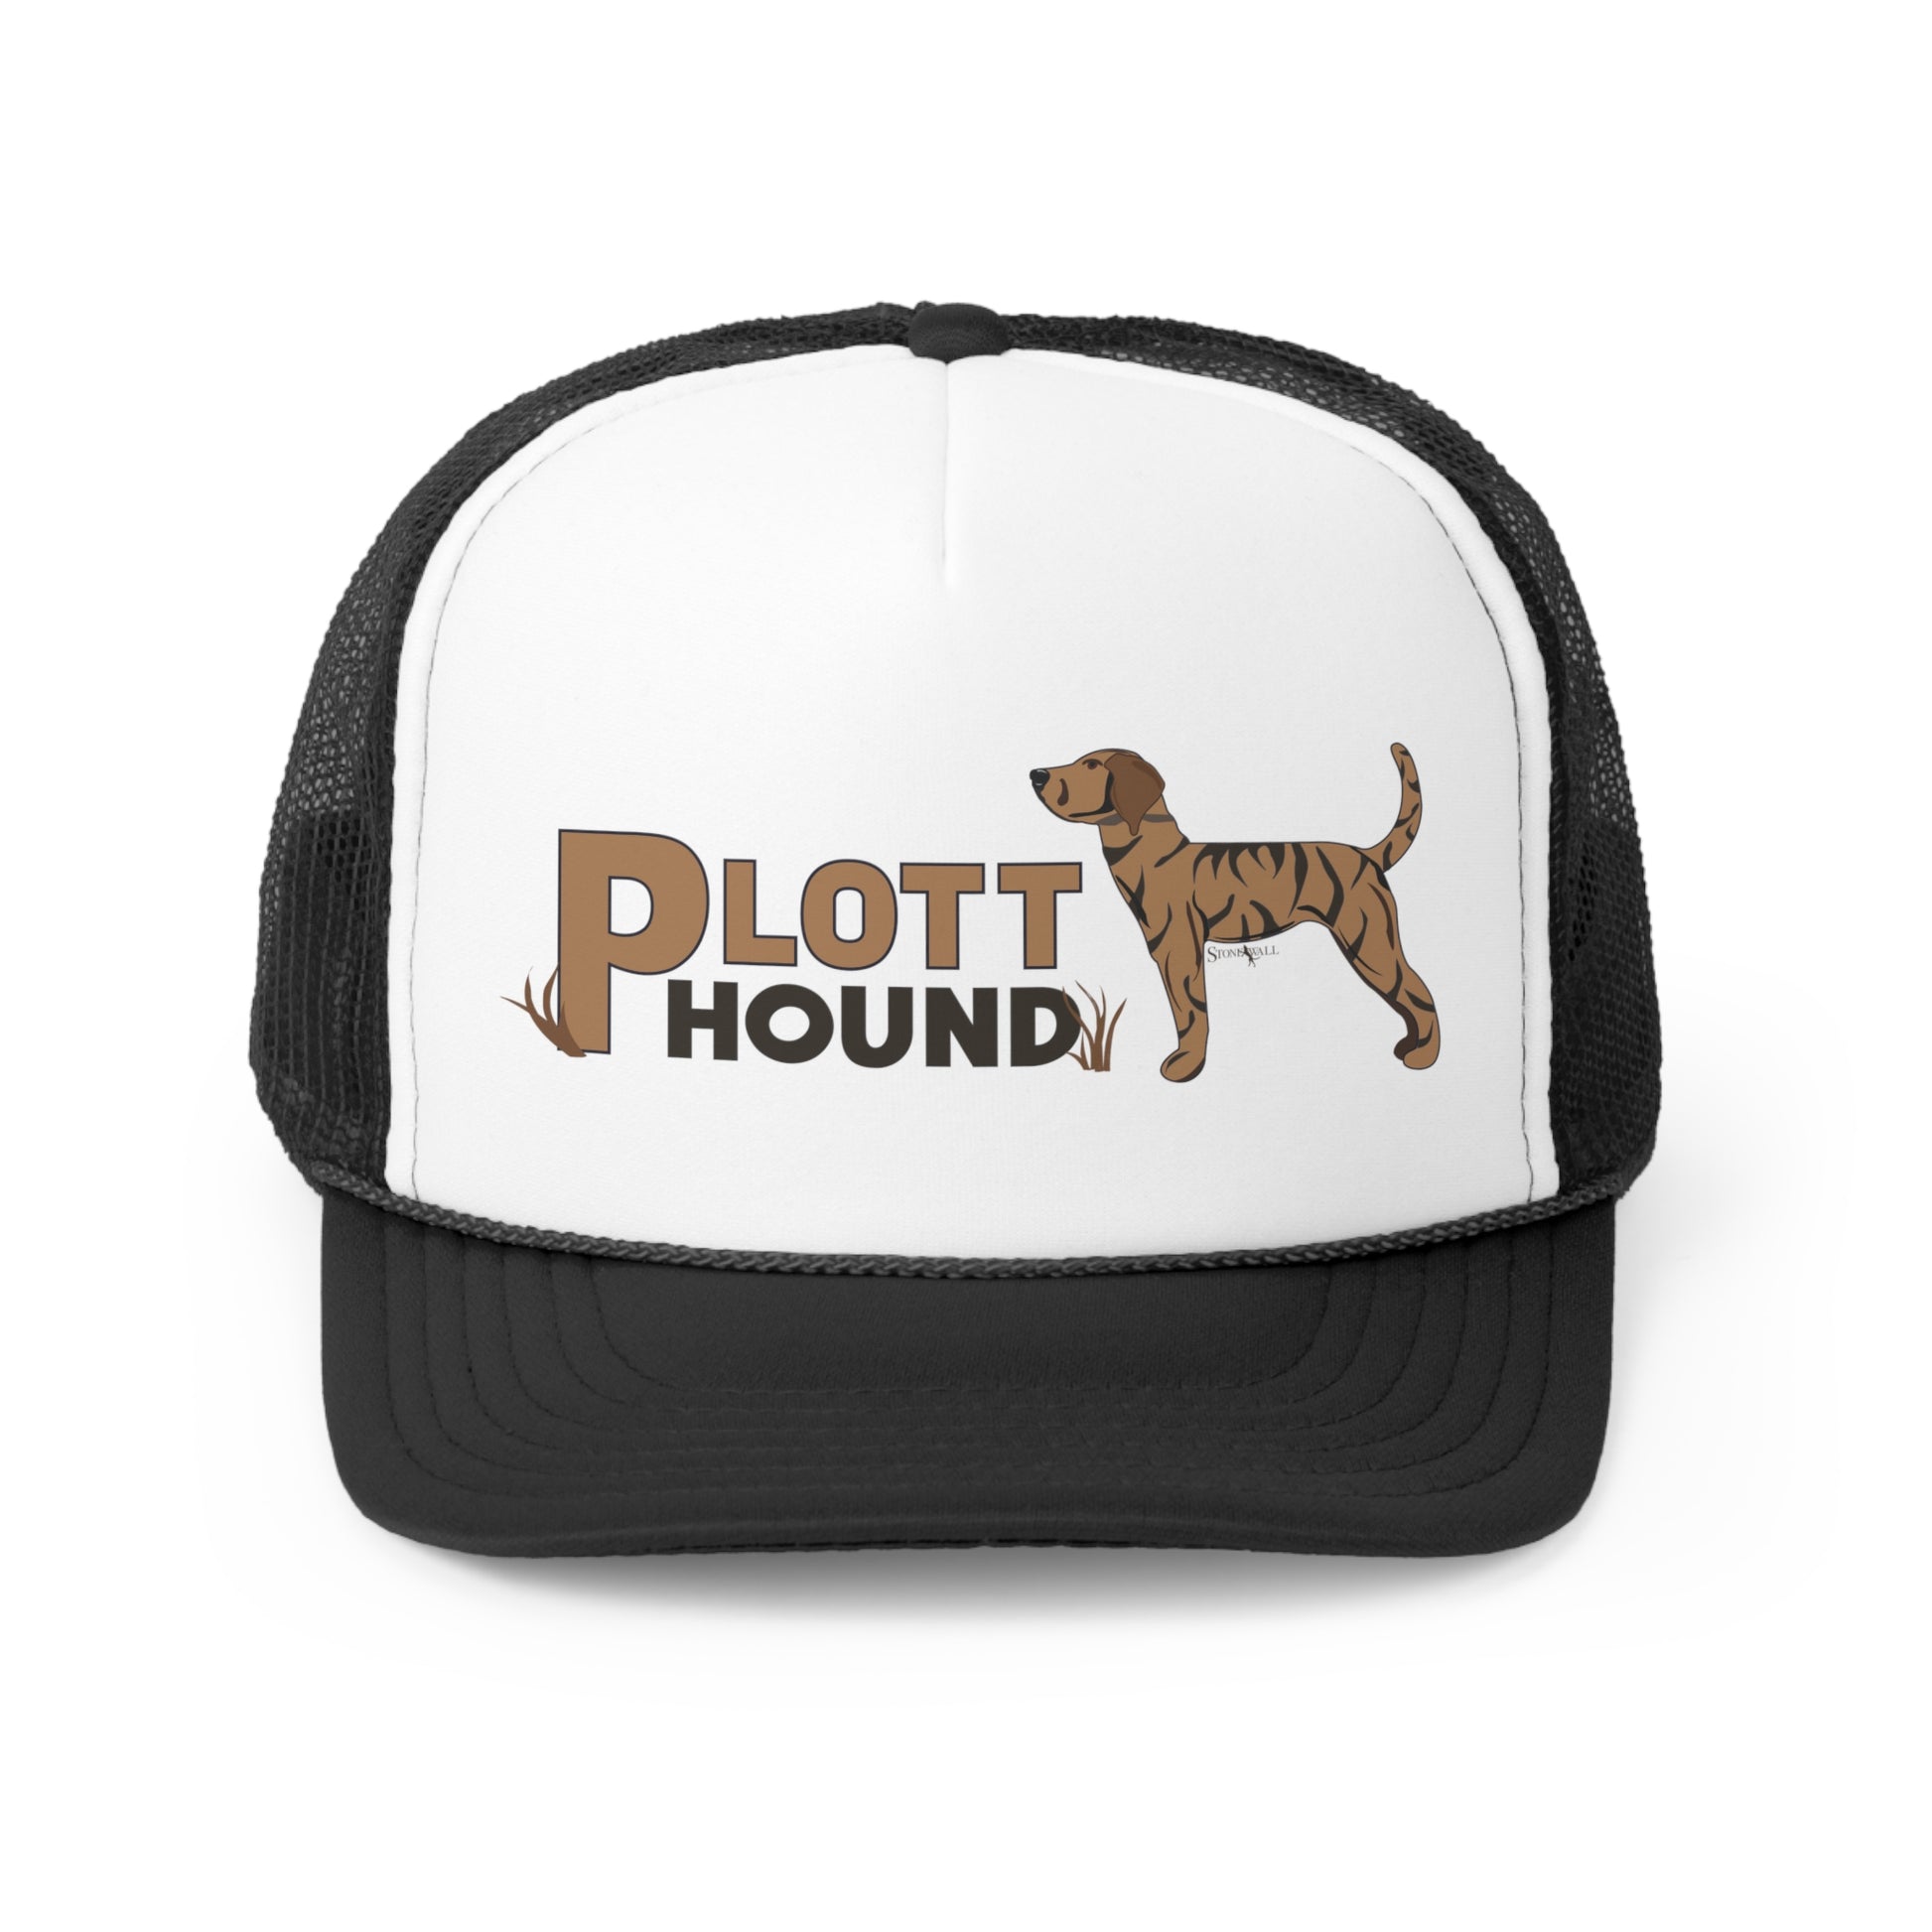 Plott Hound Trucker hat